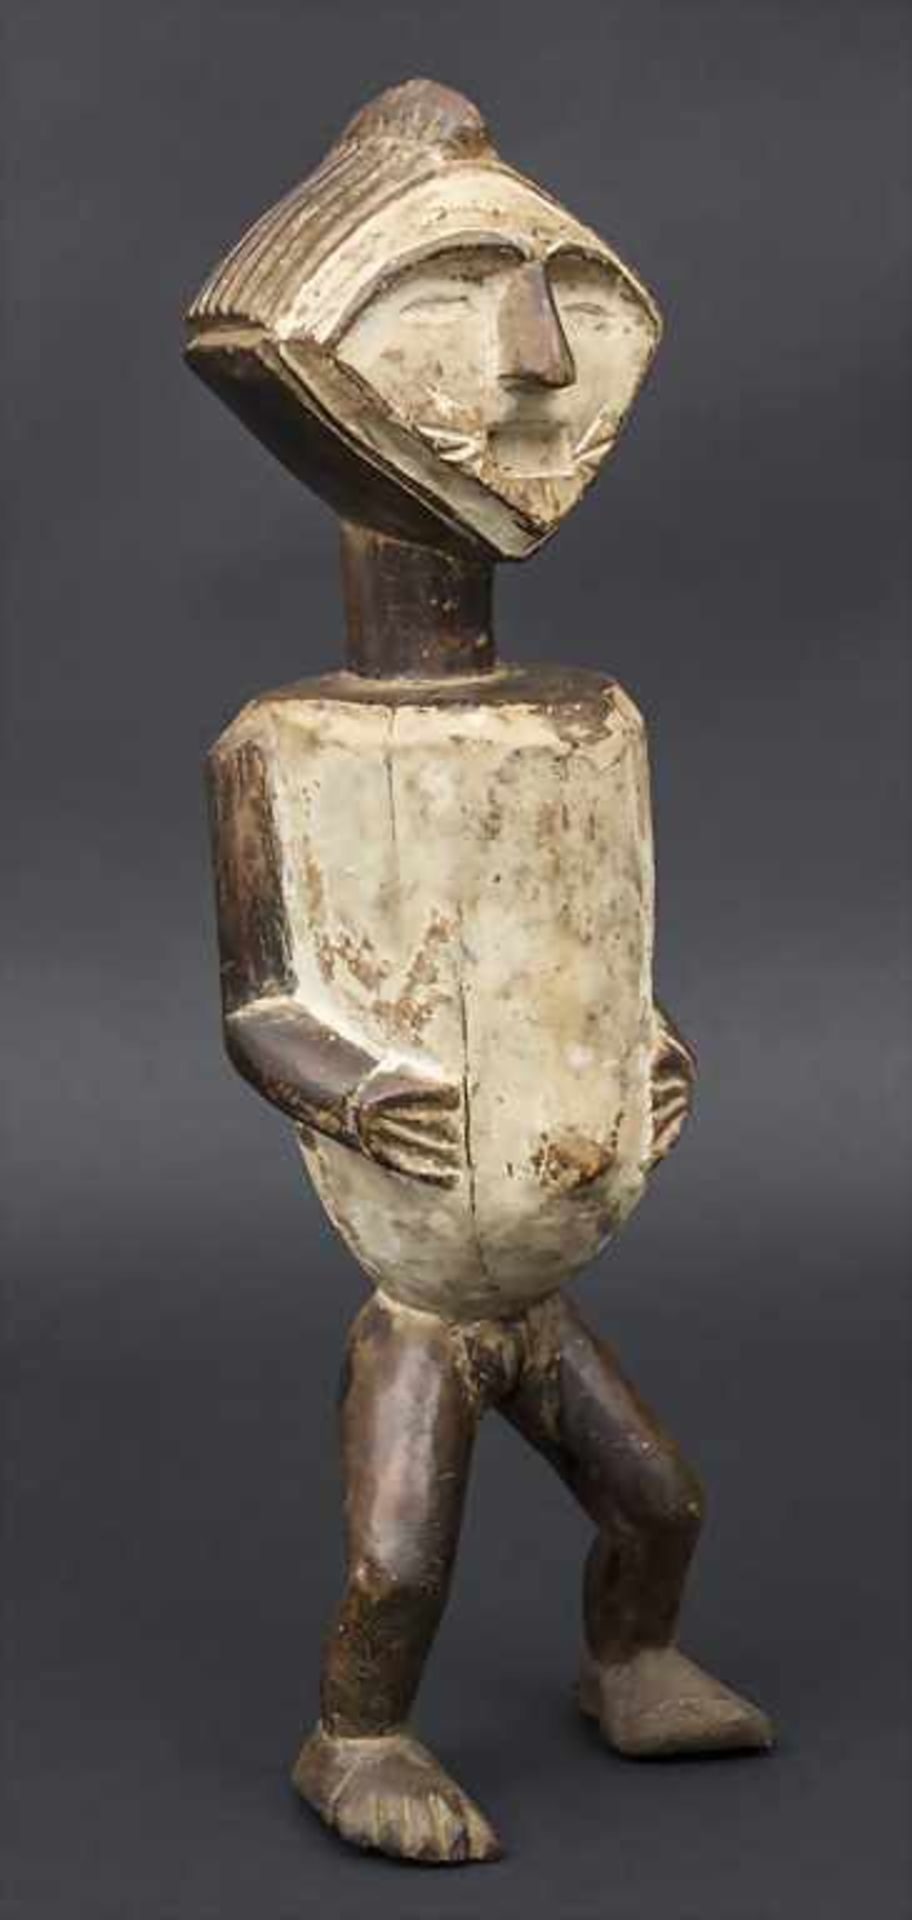 Reliquiarfigur / A Figurine, Ambete, Gabun Material: Holz, Körper und Gesicht mit Kaolin bemalt,